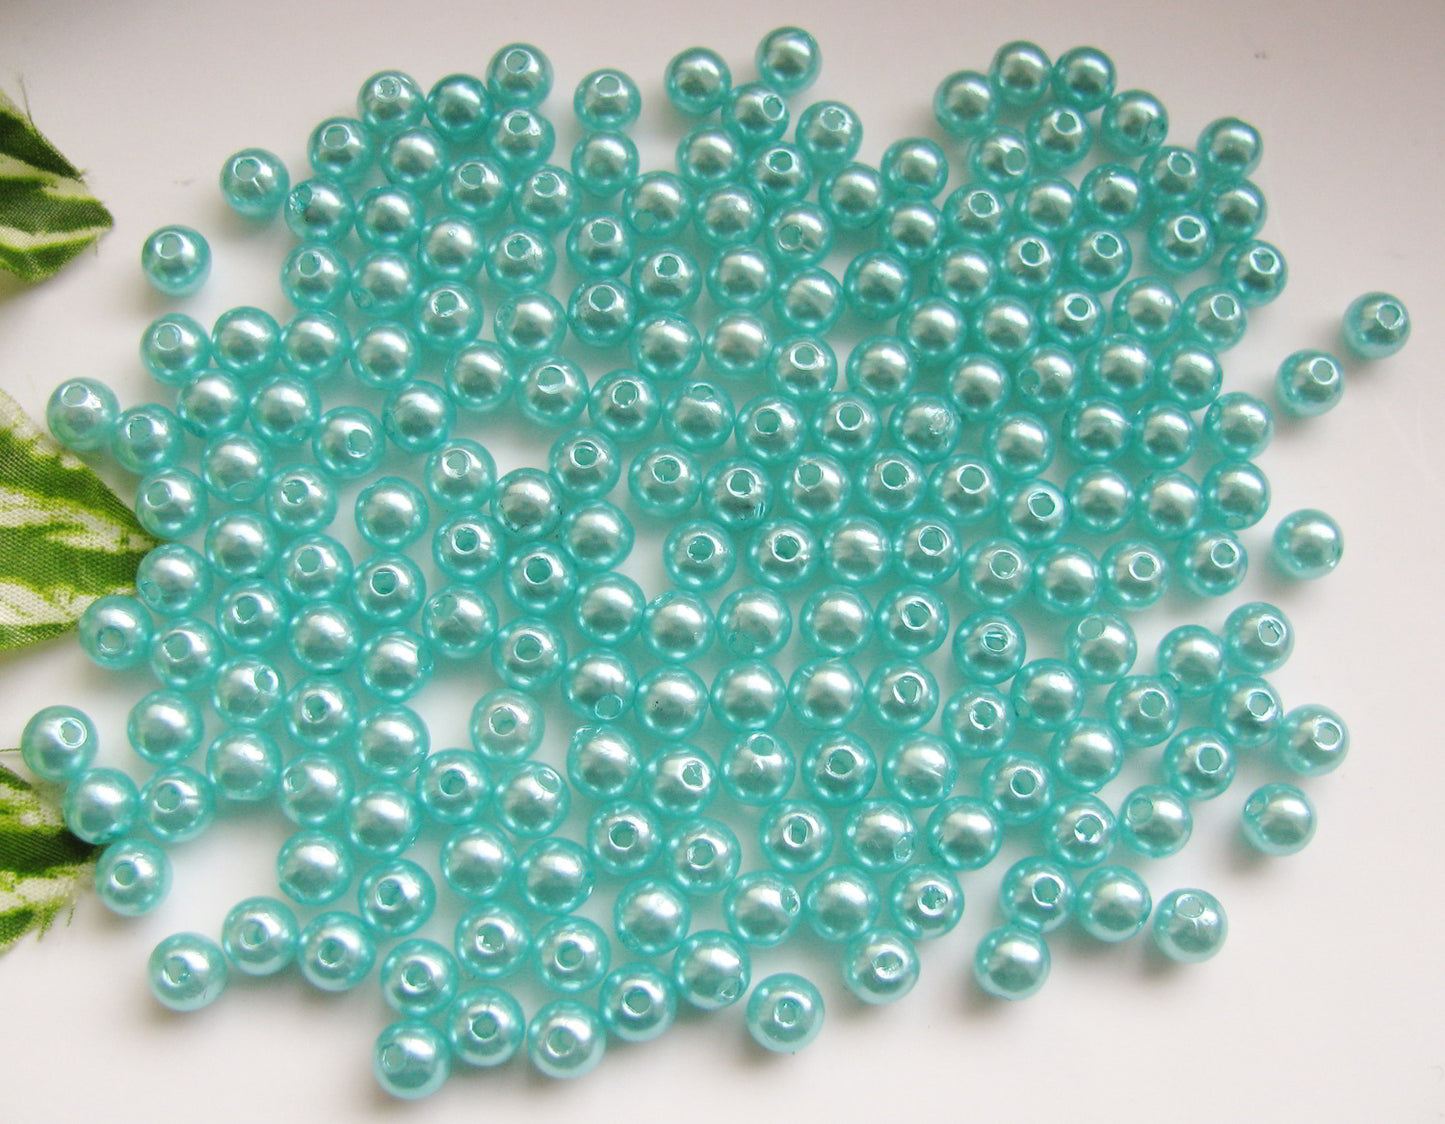 100 Wachsperlen hellblau, türkis 6mm, Perlen basteln, Kunststoffperlen, rund